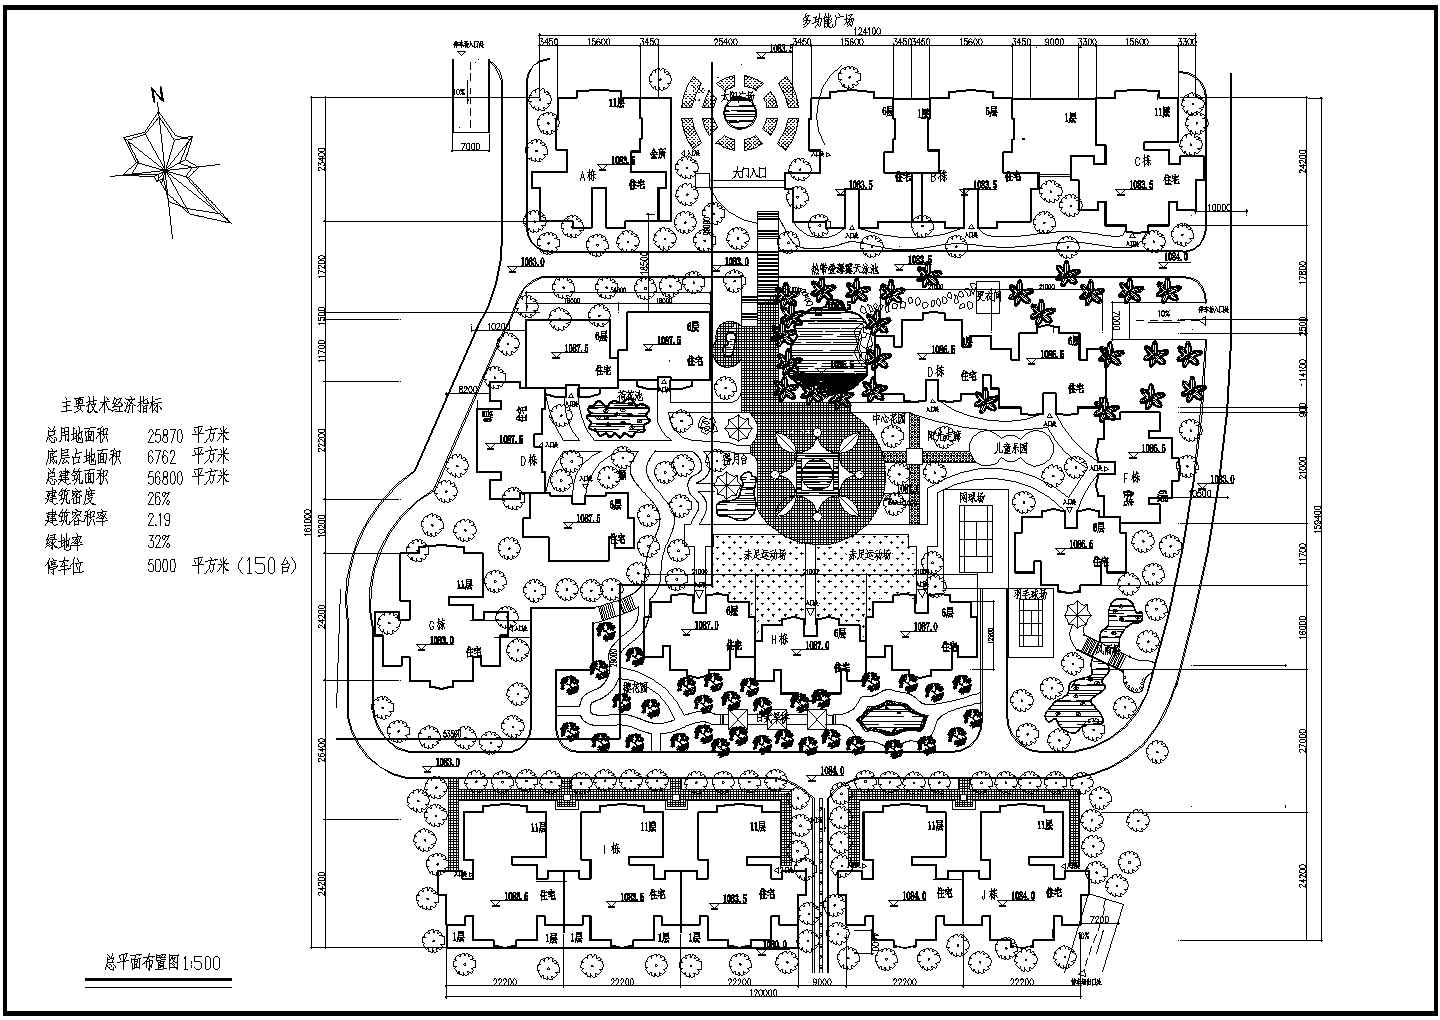 一套新天花园小区规划设计总平面图纸